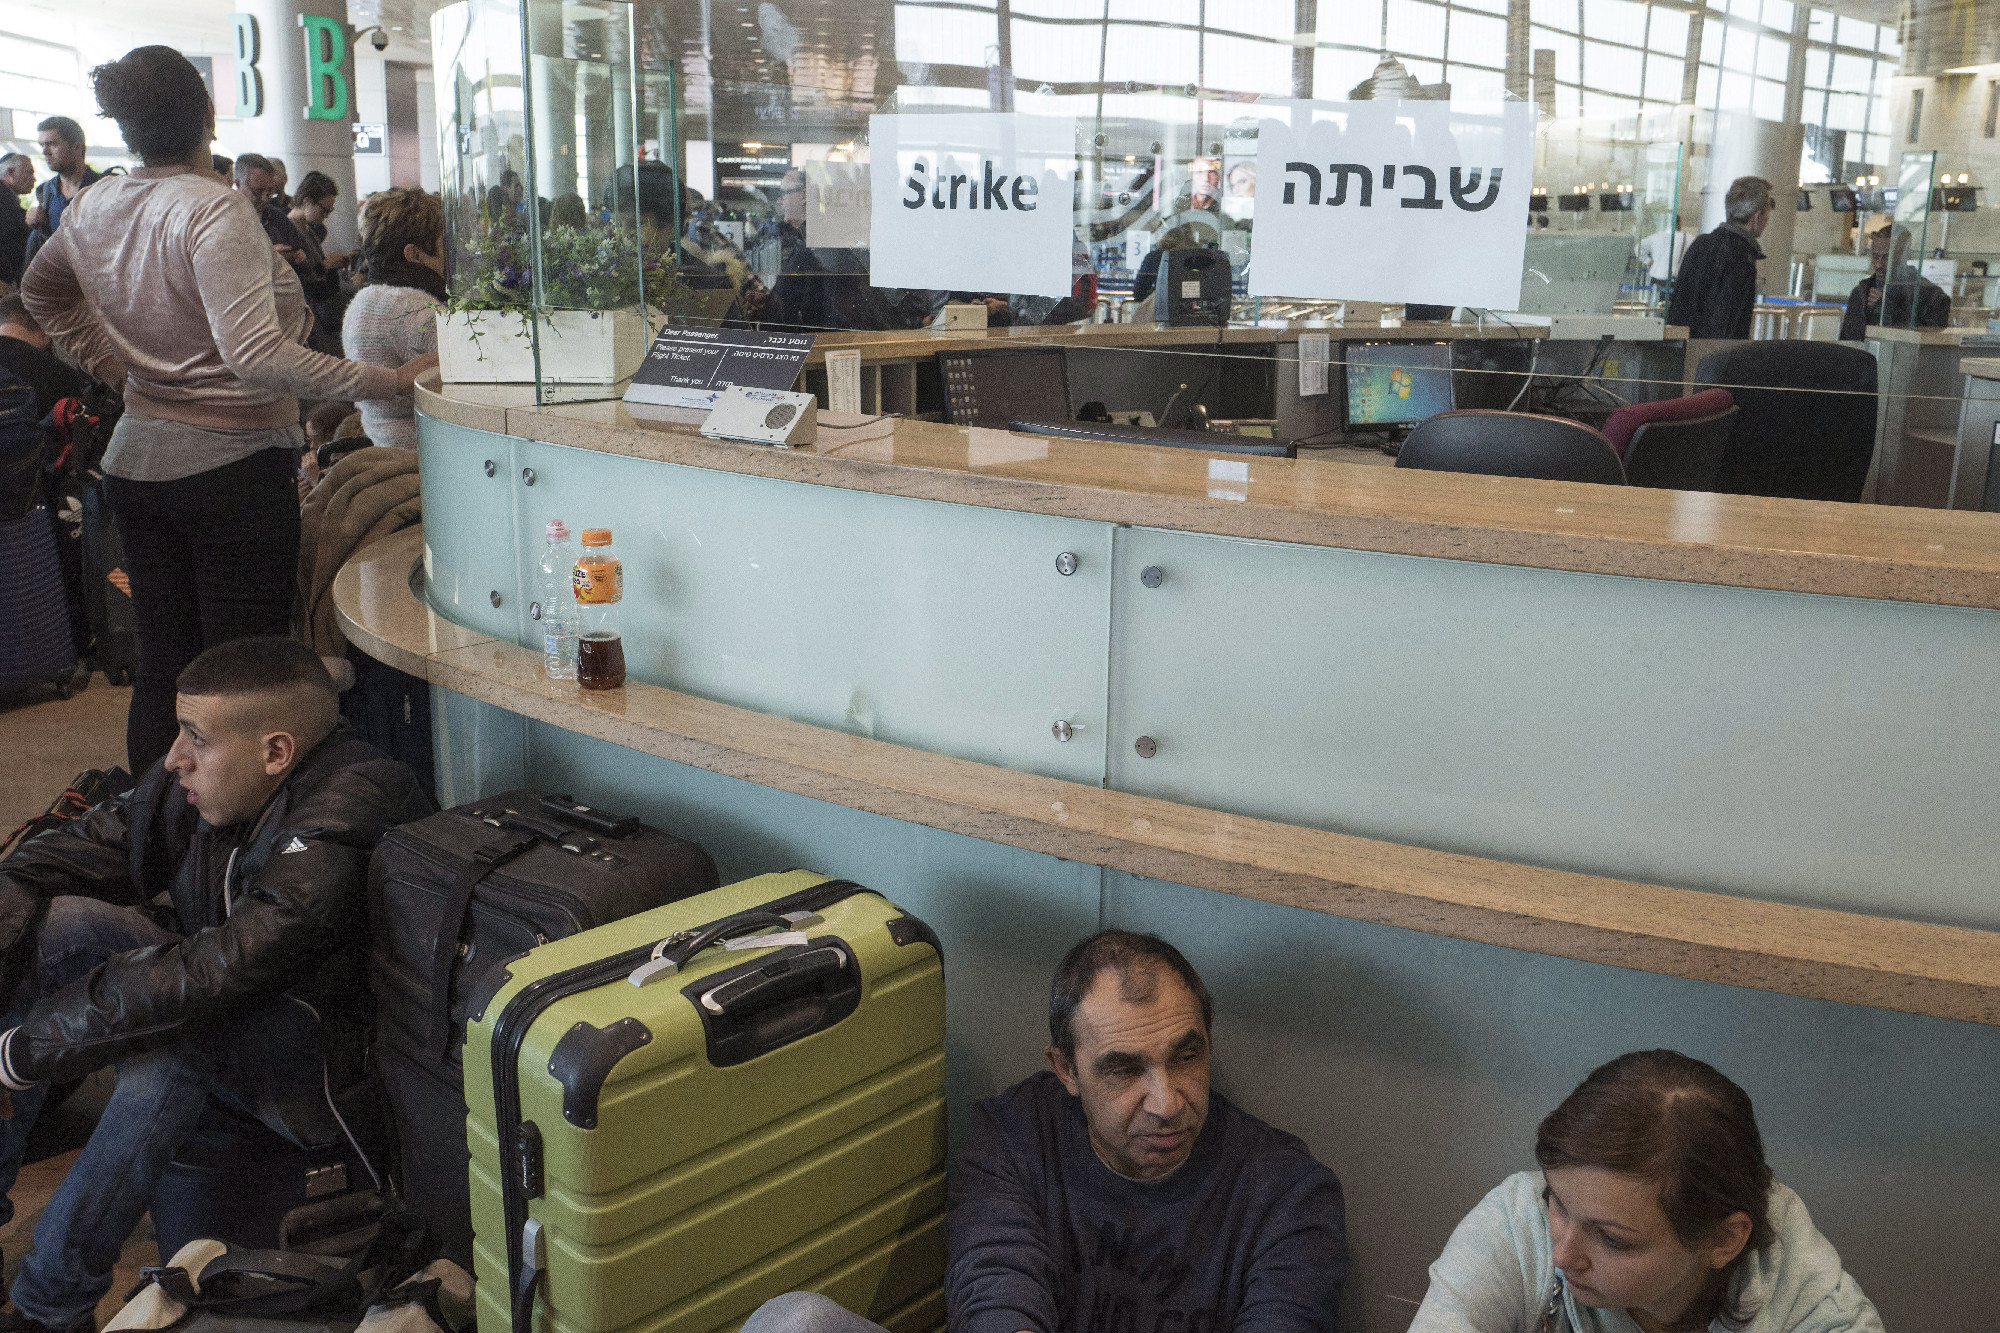 Egy magyarországi roma turistacsoport is Izraelben rekedt